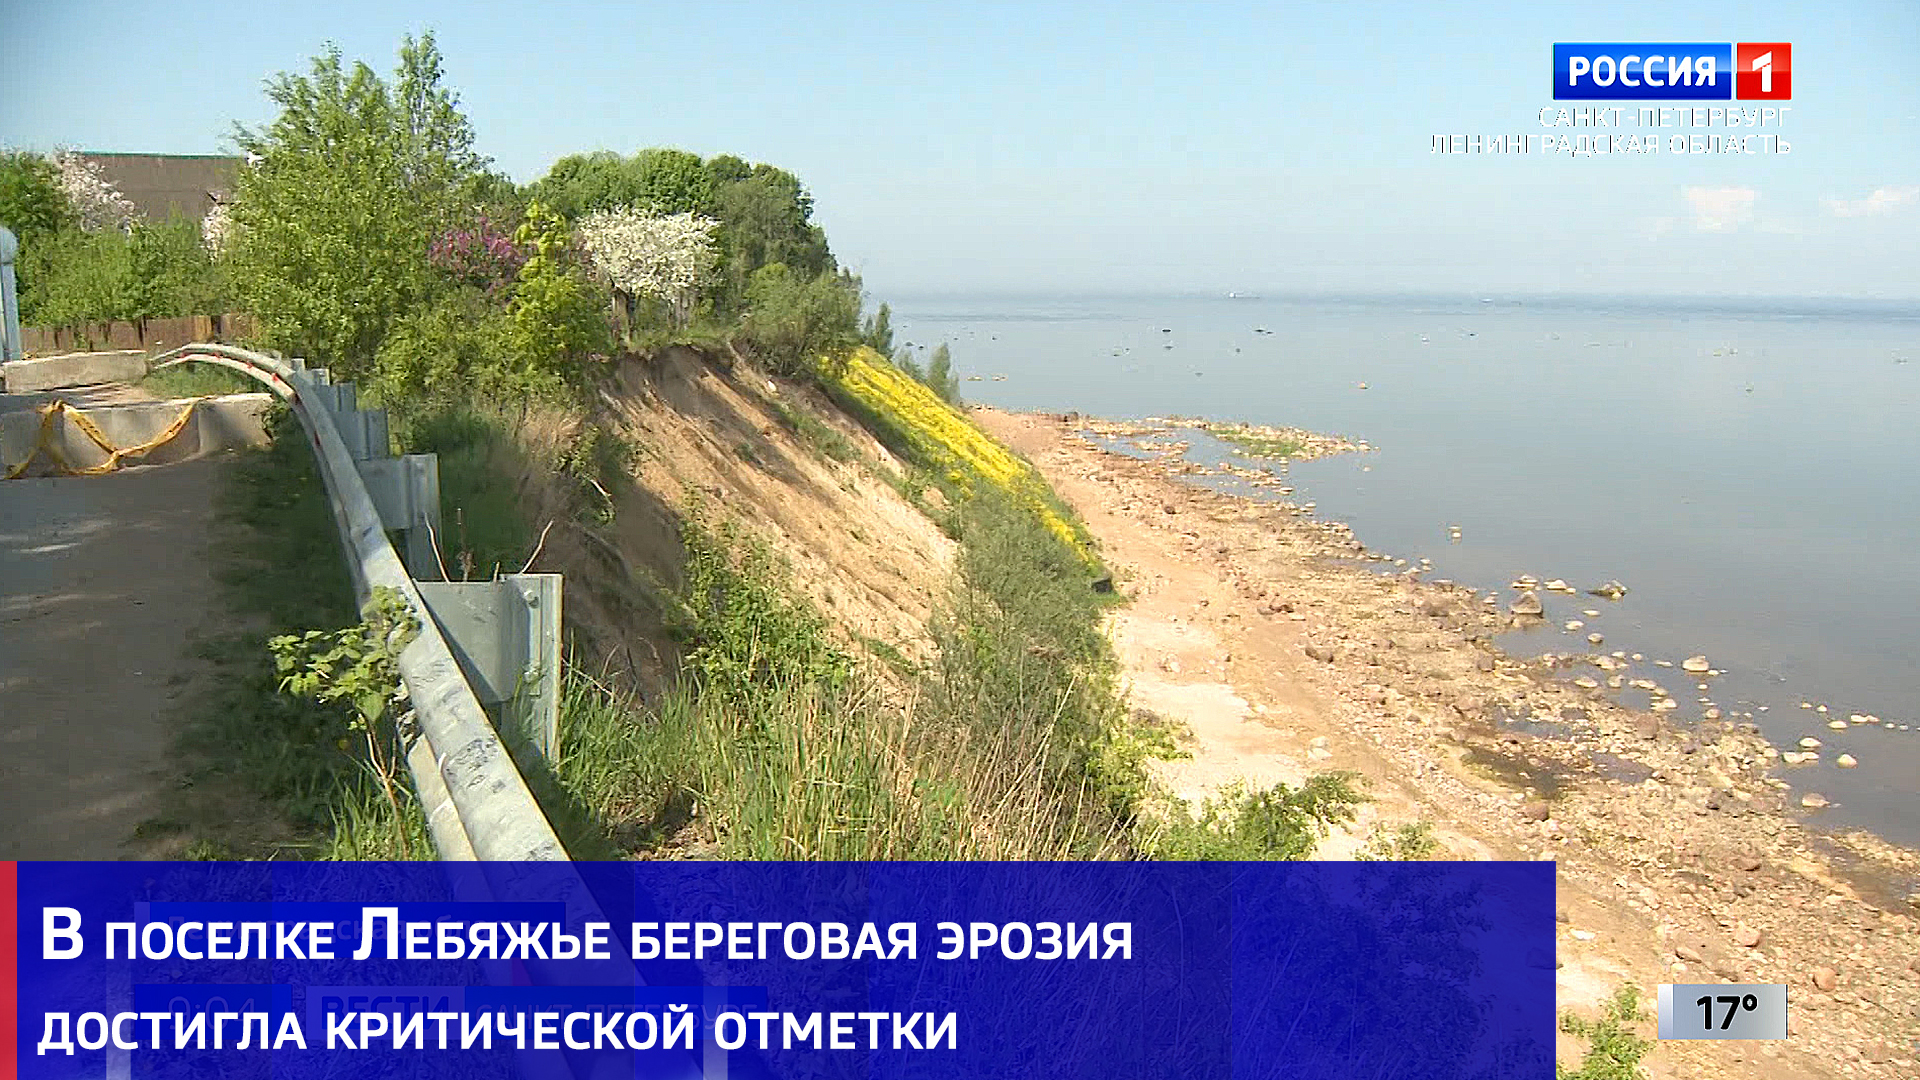 В поселке Лебяжье Ломоносовского района береговая эрозия достигла критической отметки